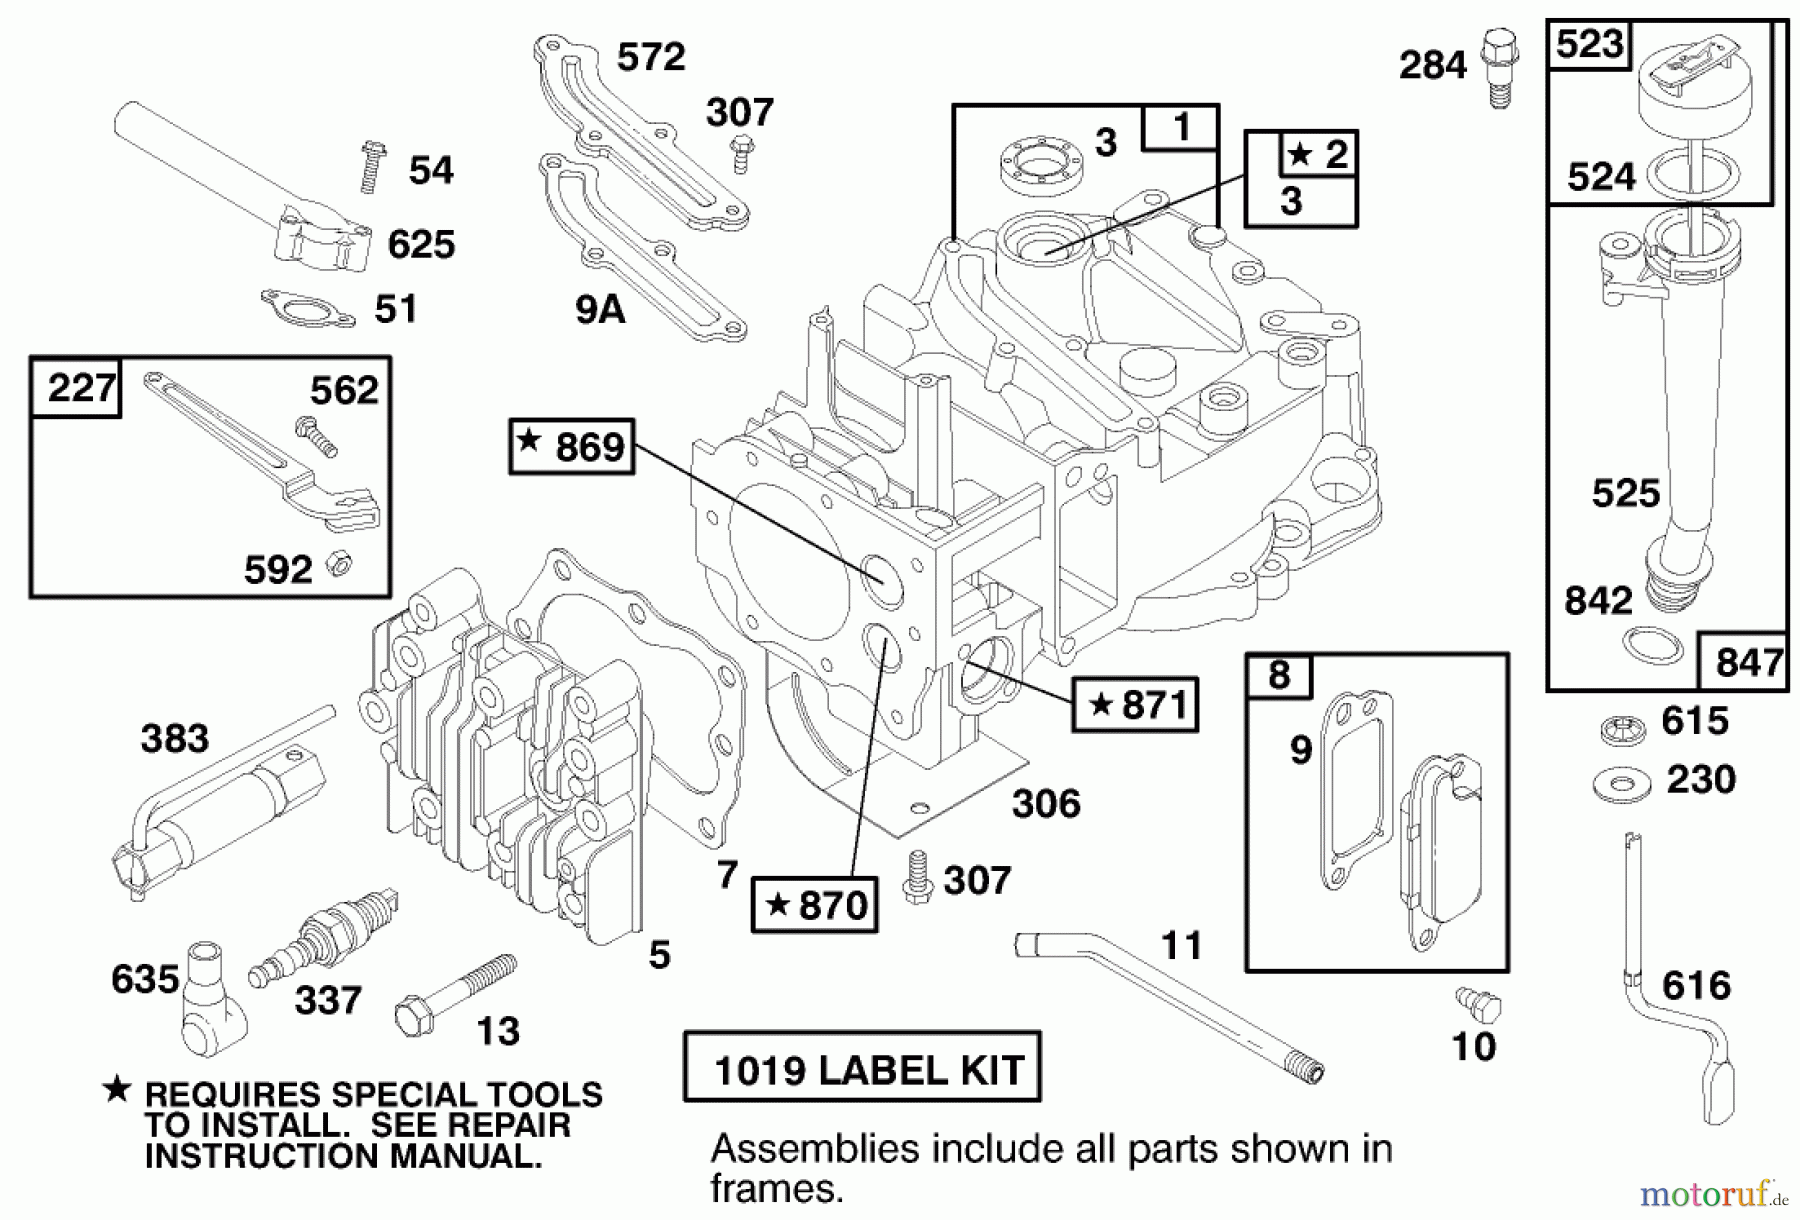  Toro Neu Mowers, Walk-Behind Seite 1 20458 - Toro Lawnmower, 1997 (7900001-7999999) ENGINE BRIGGS & STRATTON MODEL 12H802-0658-01 #1